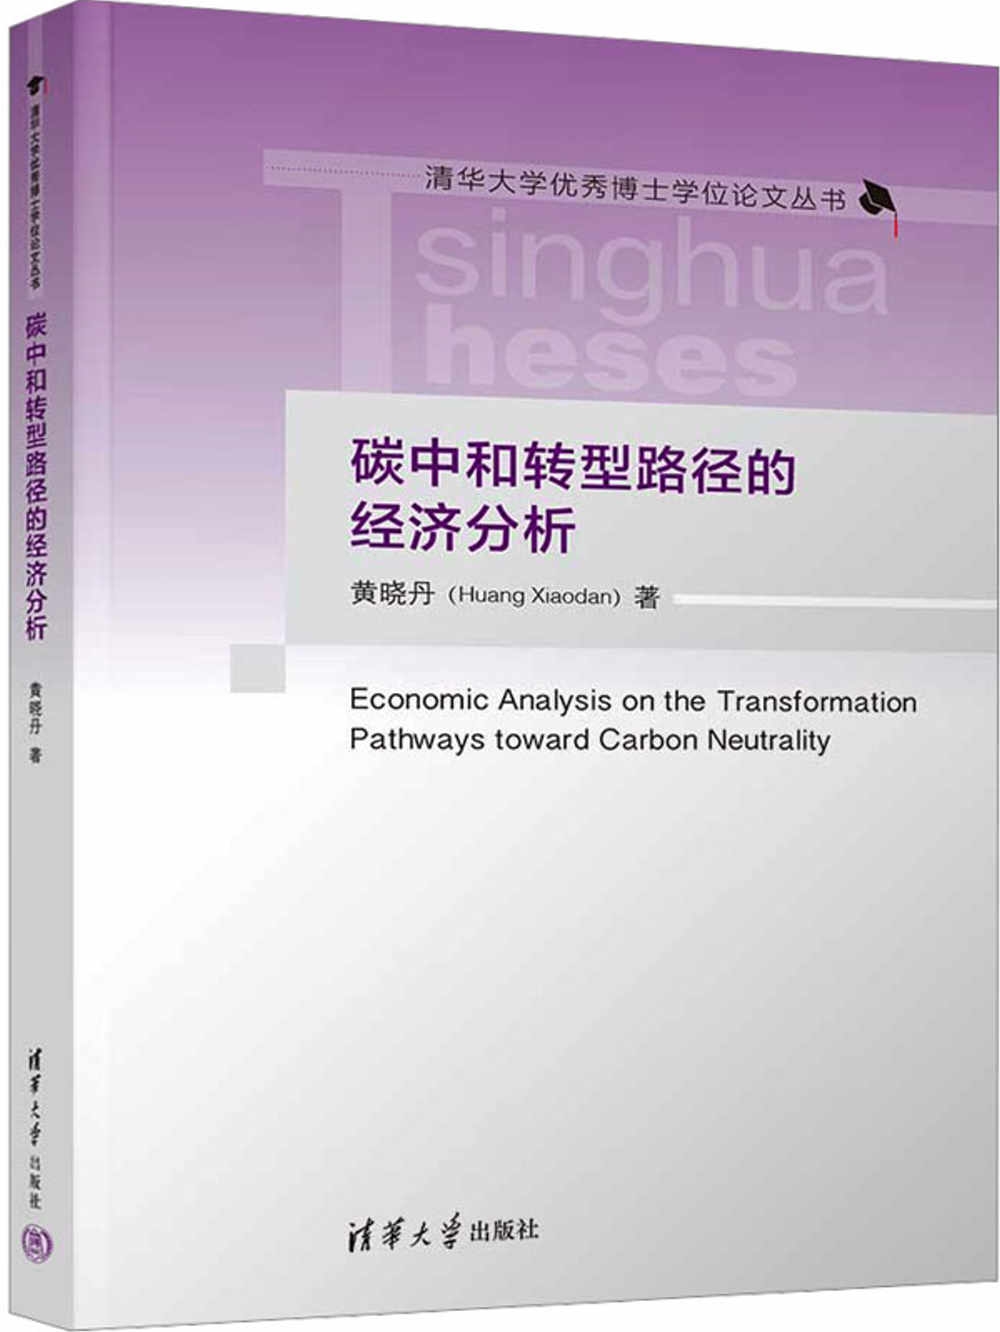 碳中和轉型路徑的經濟分析